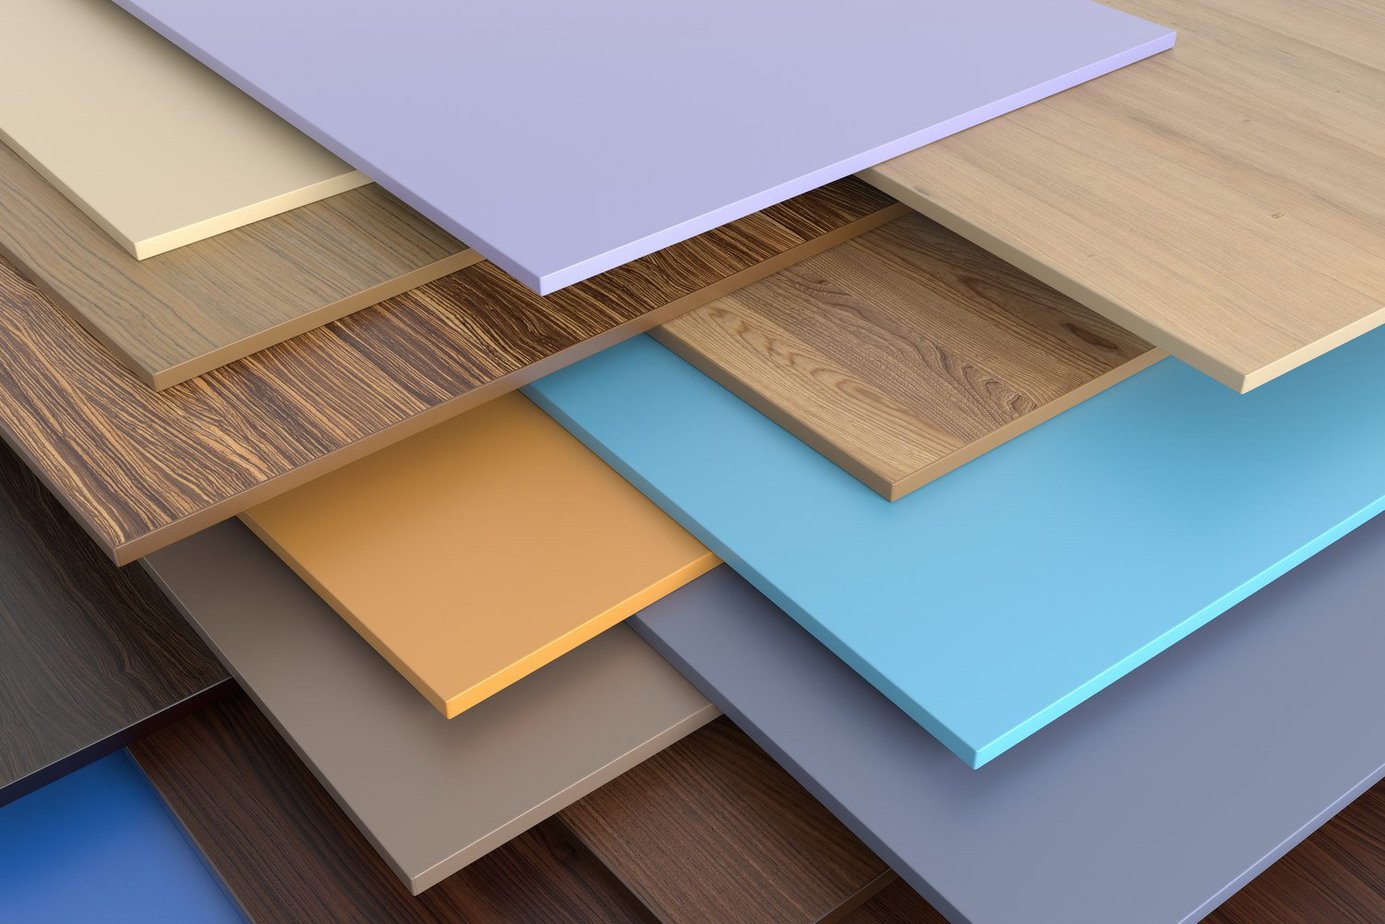 Ván gỗ nhựa công nghiệp với nhiều màu sắc khác nhau